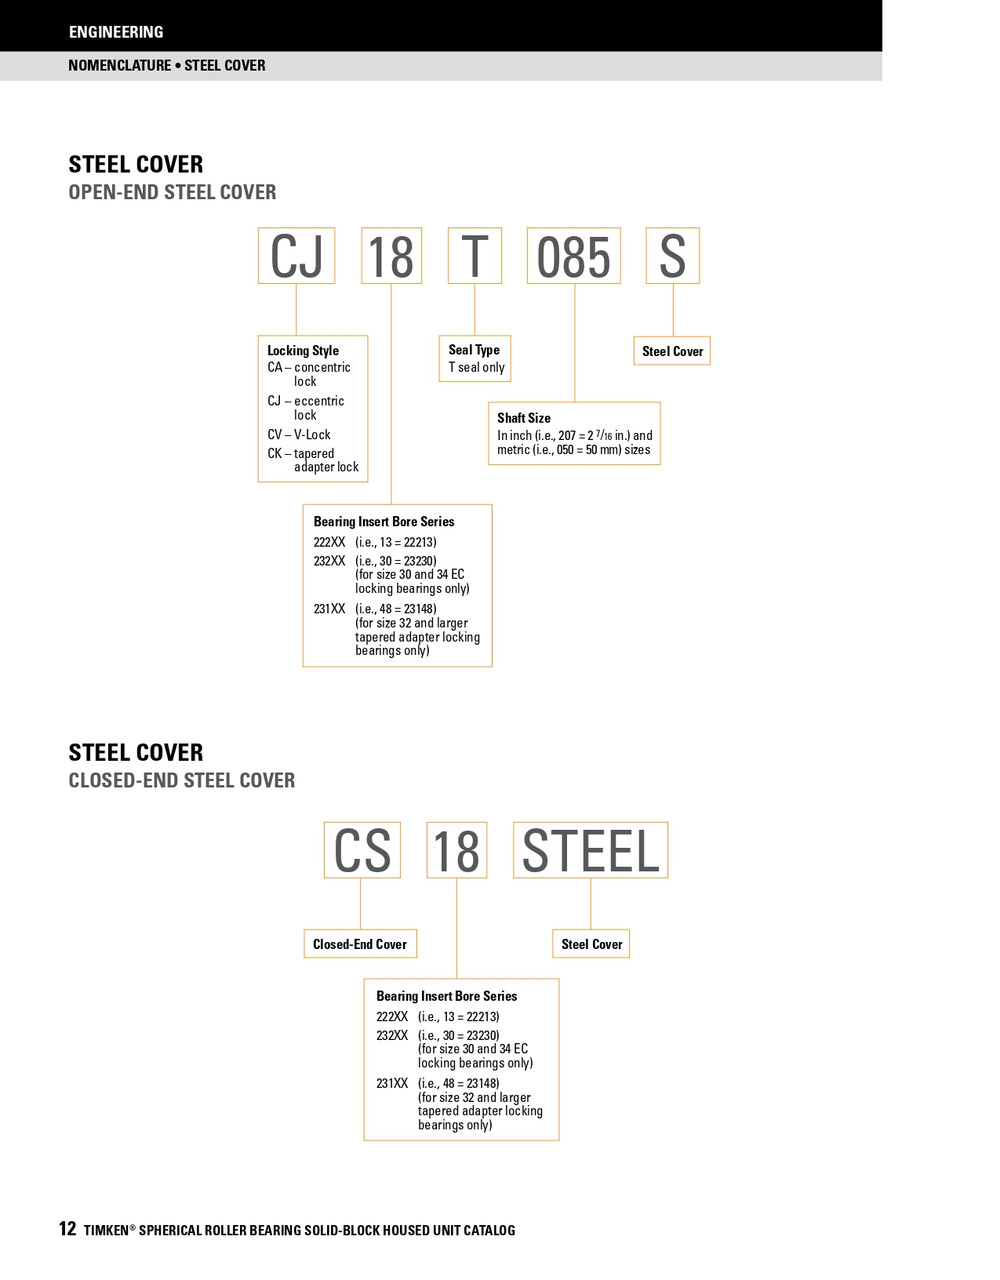 85mm Timken SRB Steel Open End Cover w/Teflon Seal - TA/DV Taper Lock Bushing Type  CK19T085S